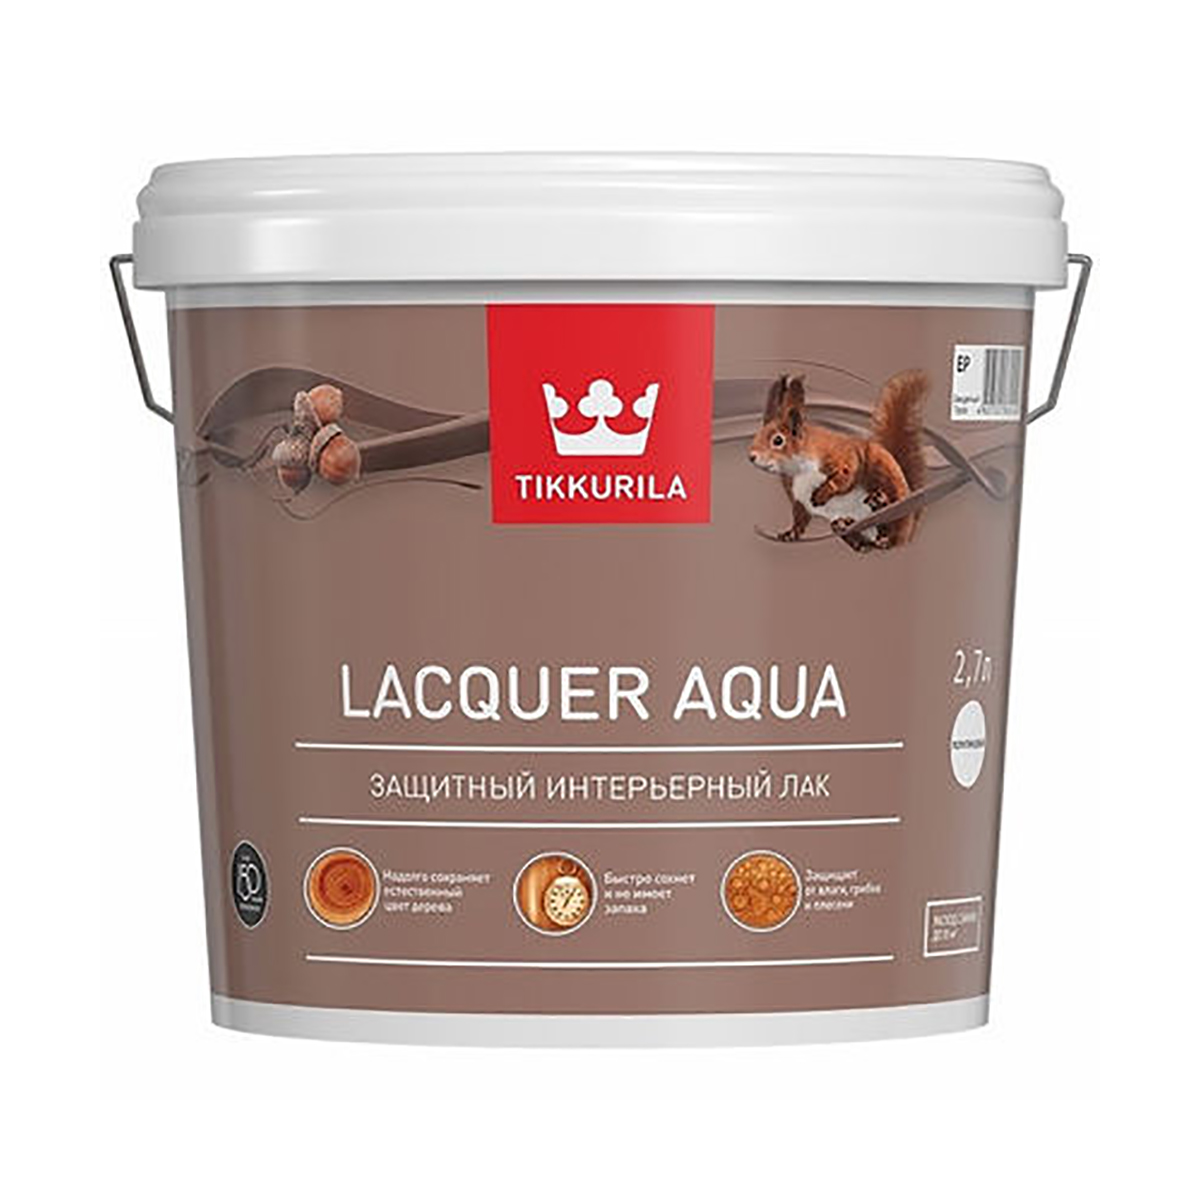 Лак Tikkurila Euro Lacquer Aqua (700001138) бесцветный 2.7л лак интерьерный tikkurila lacquer aqua база ep бес ный полуглянцевый 2 7 л